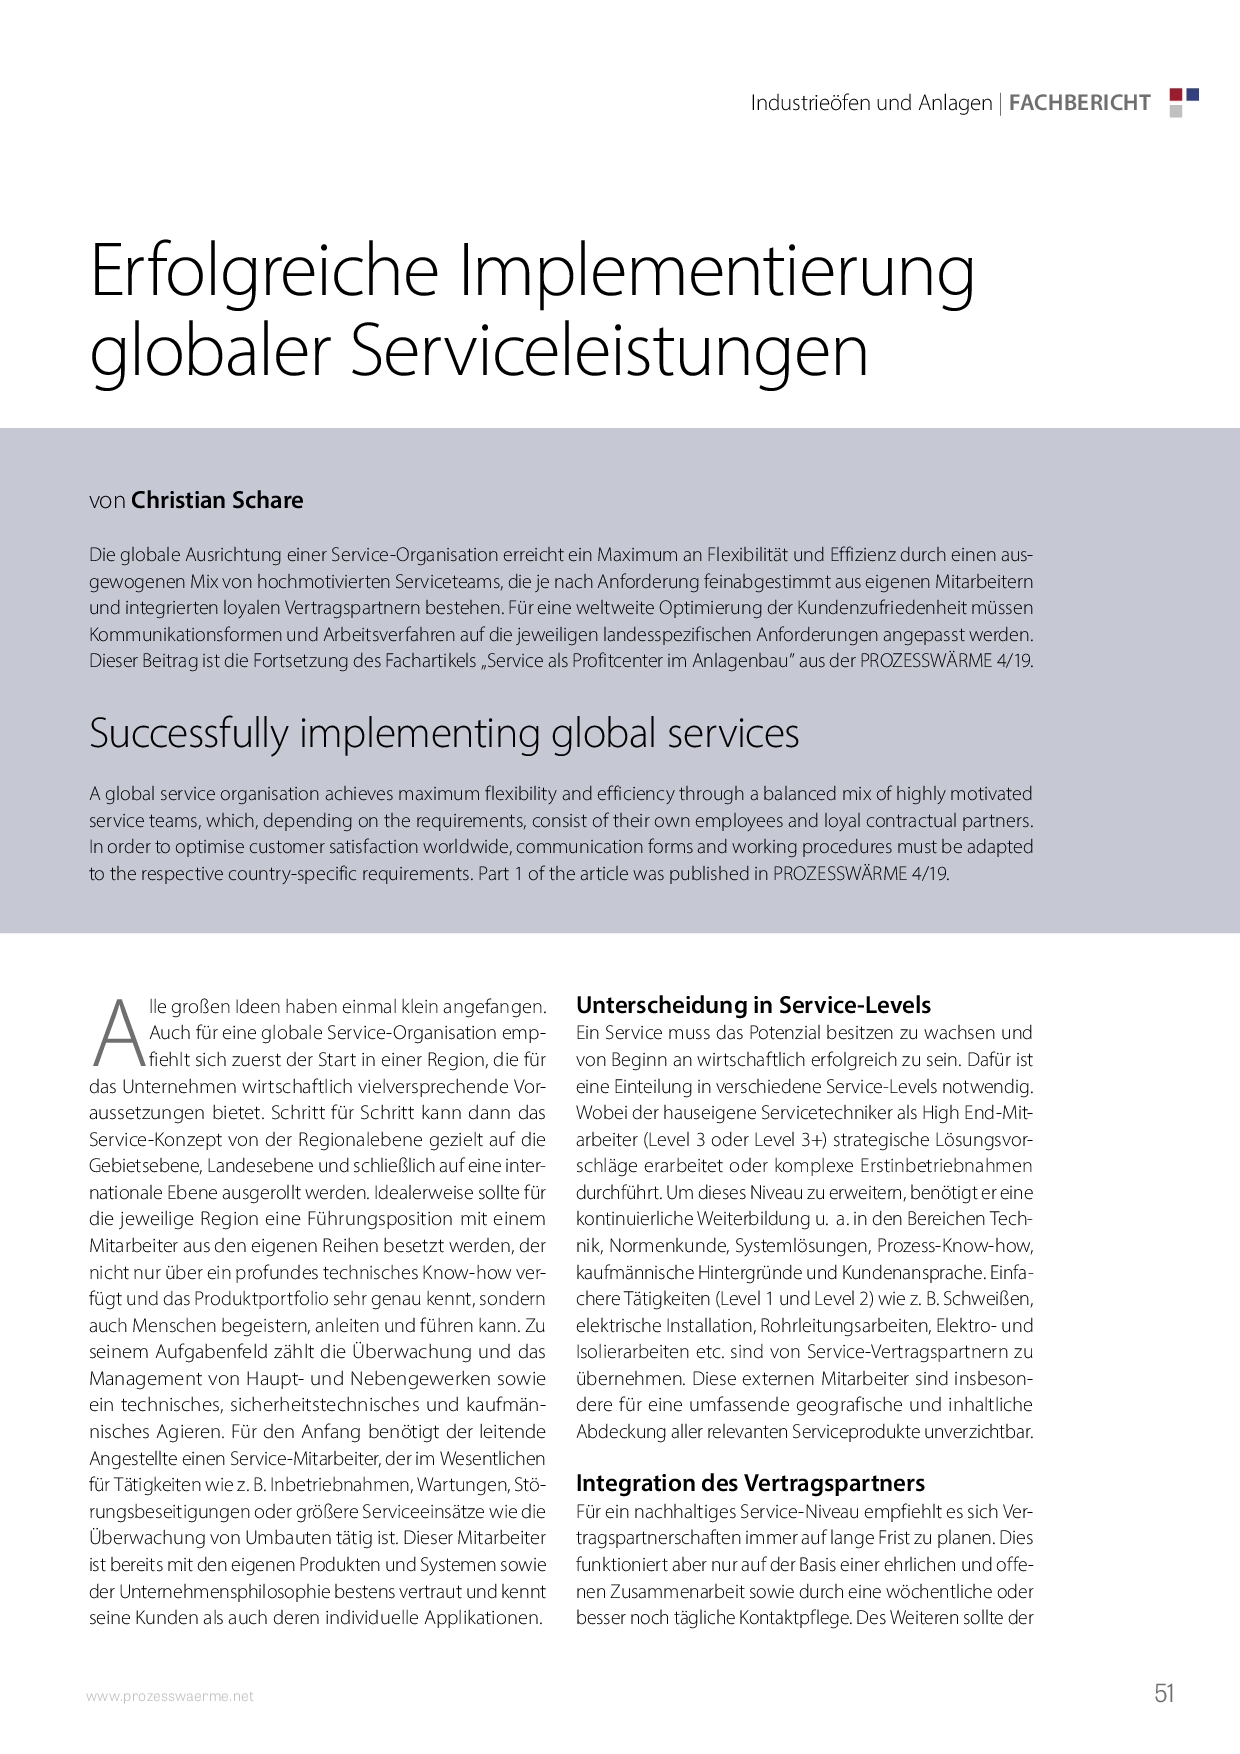 Erfolgreiche Implementierung globaler Serviceleistungen